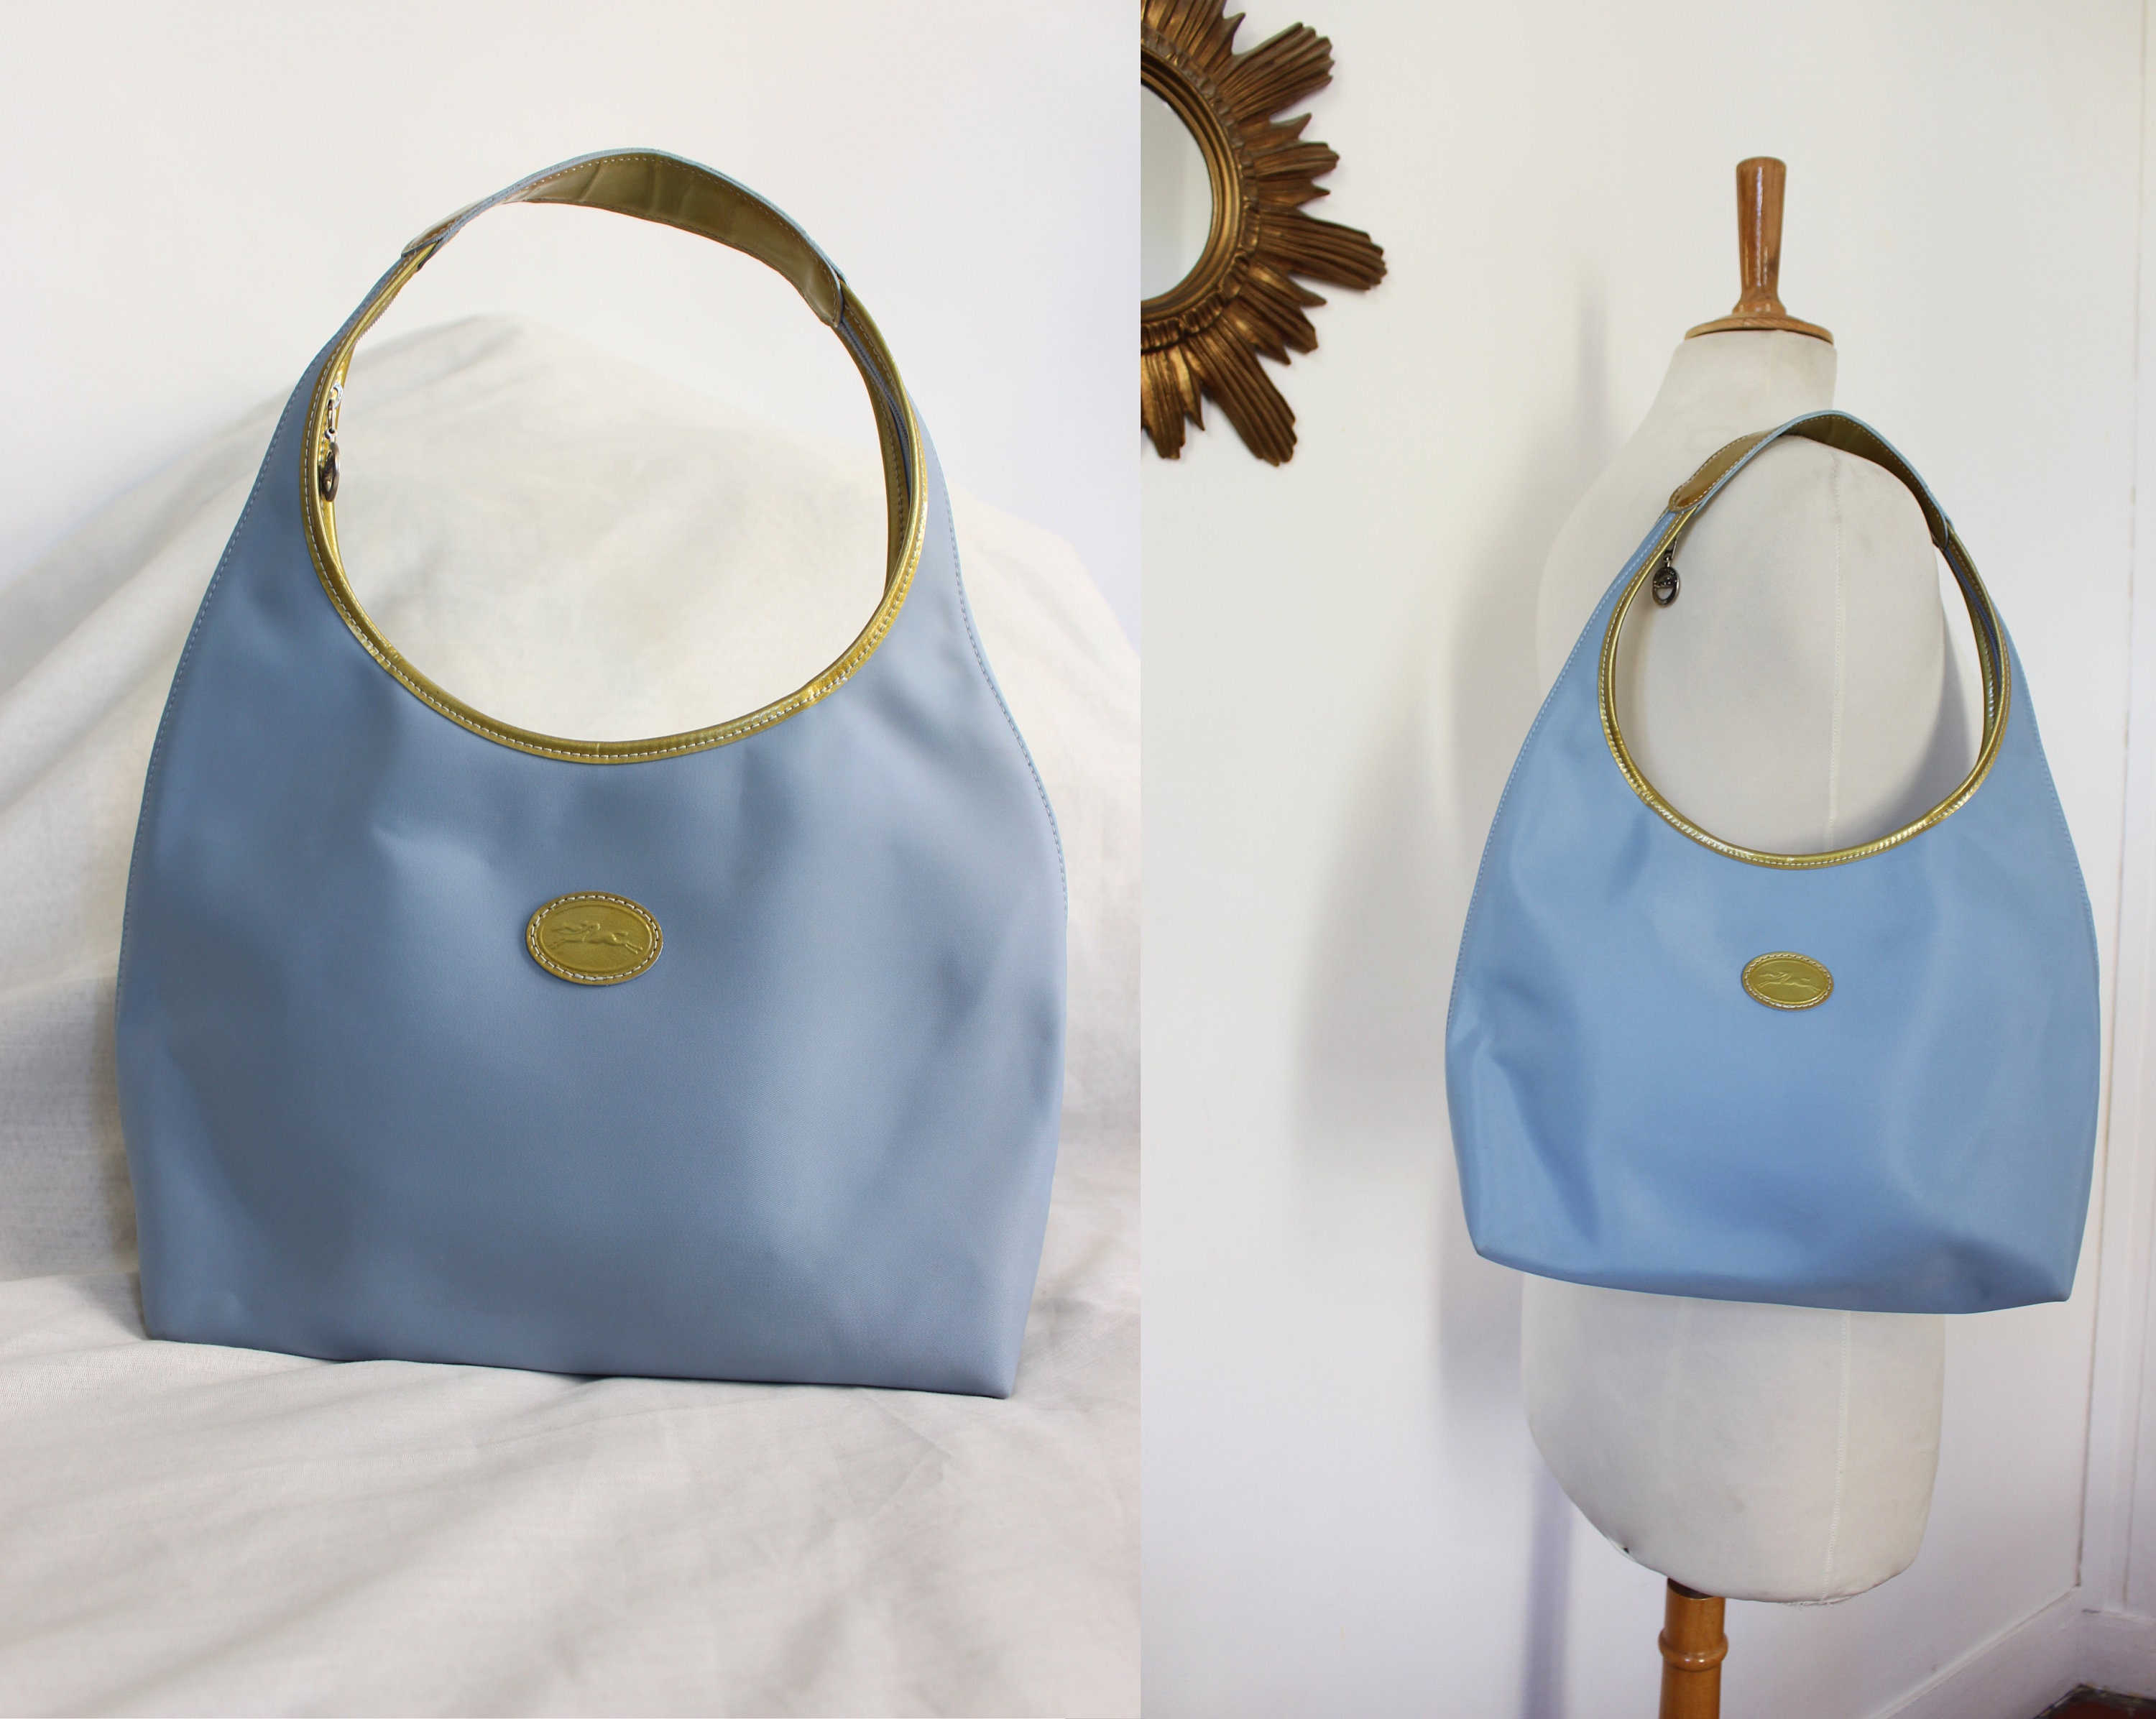 LONGCHAMP 1948 Vintage Hobo Baguette Handbag in Light Blue -  India